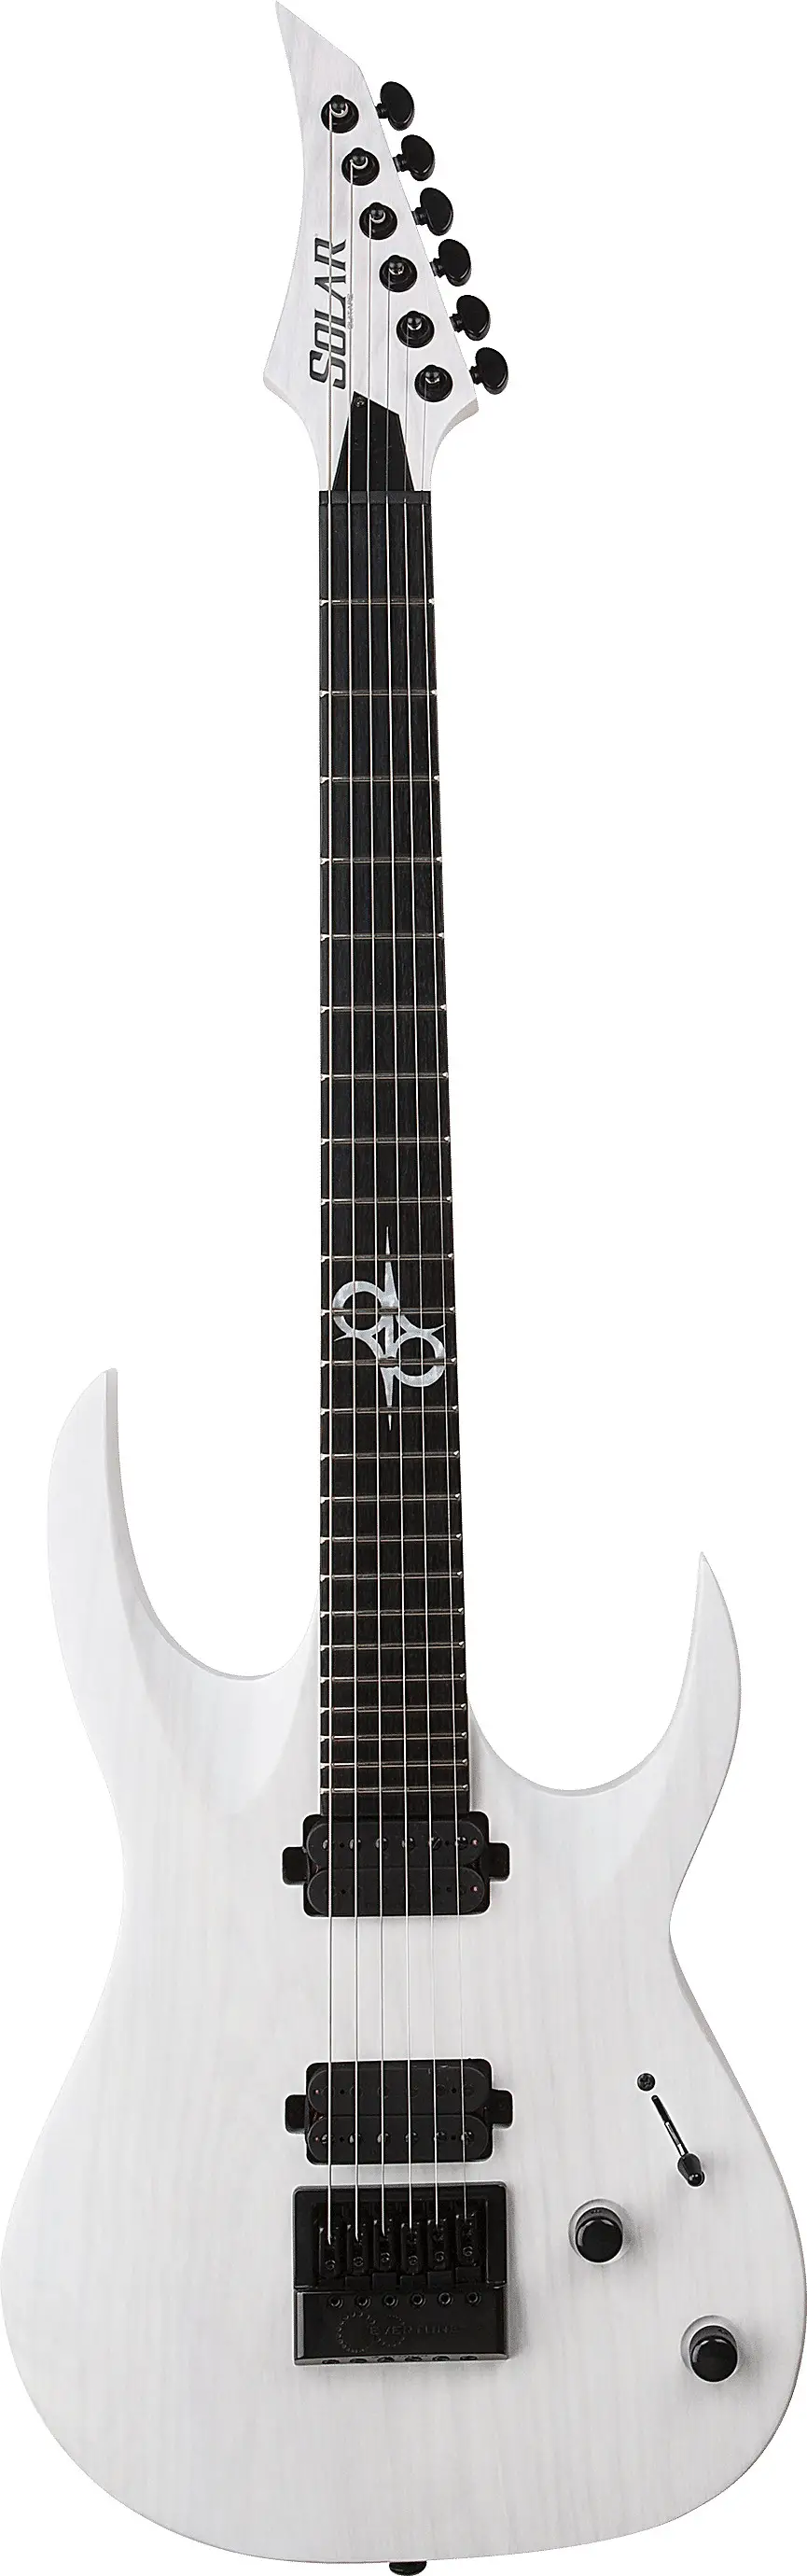 A1.6ET by Solar Guitars